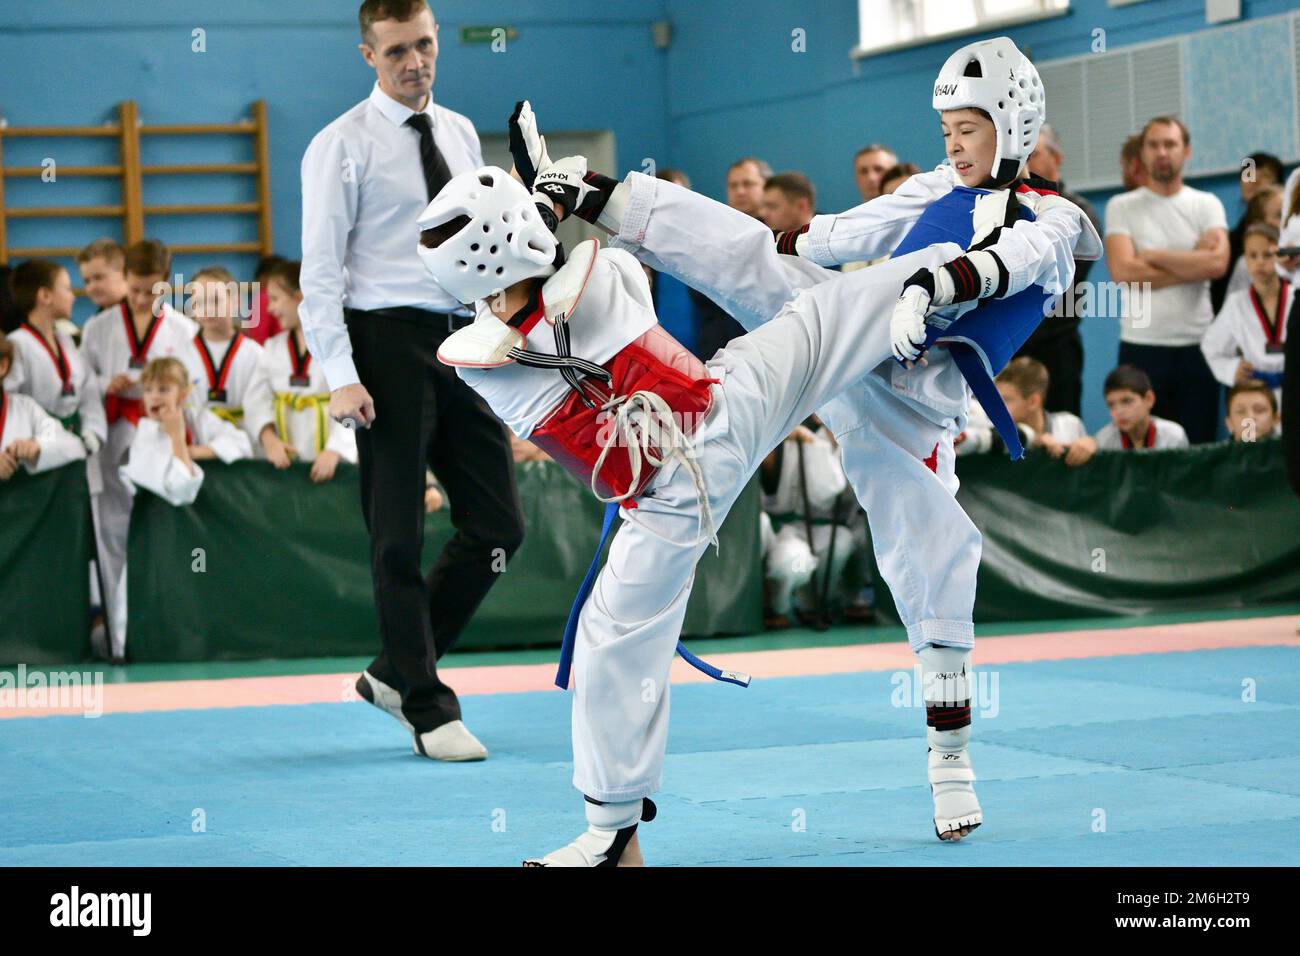 Orenburg, Russia - October 19, 2019: Boy compete in taekwondo (Korean martial arts) at Orenburg Open Stock Photo